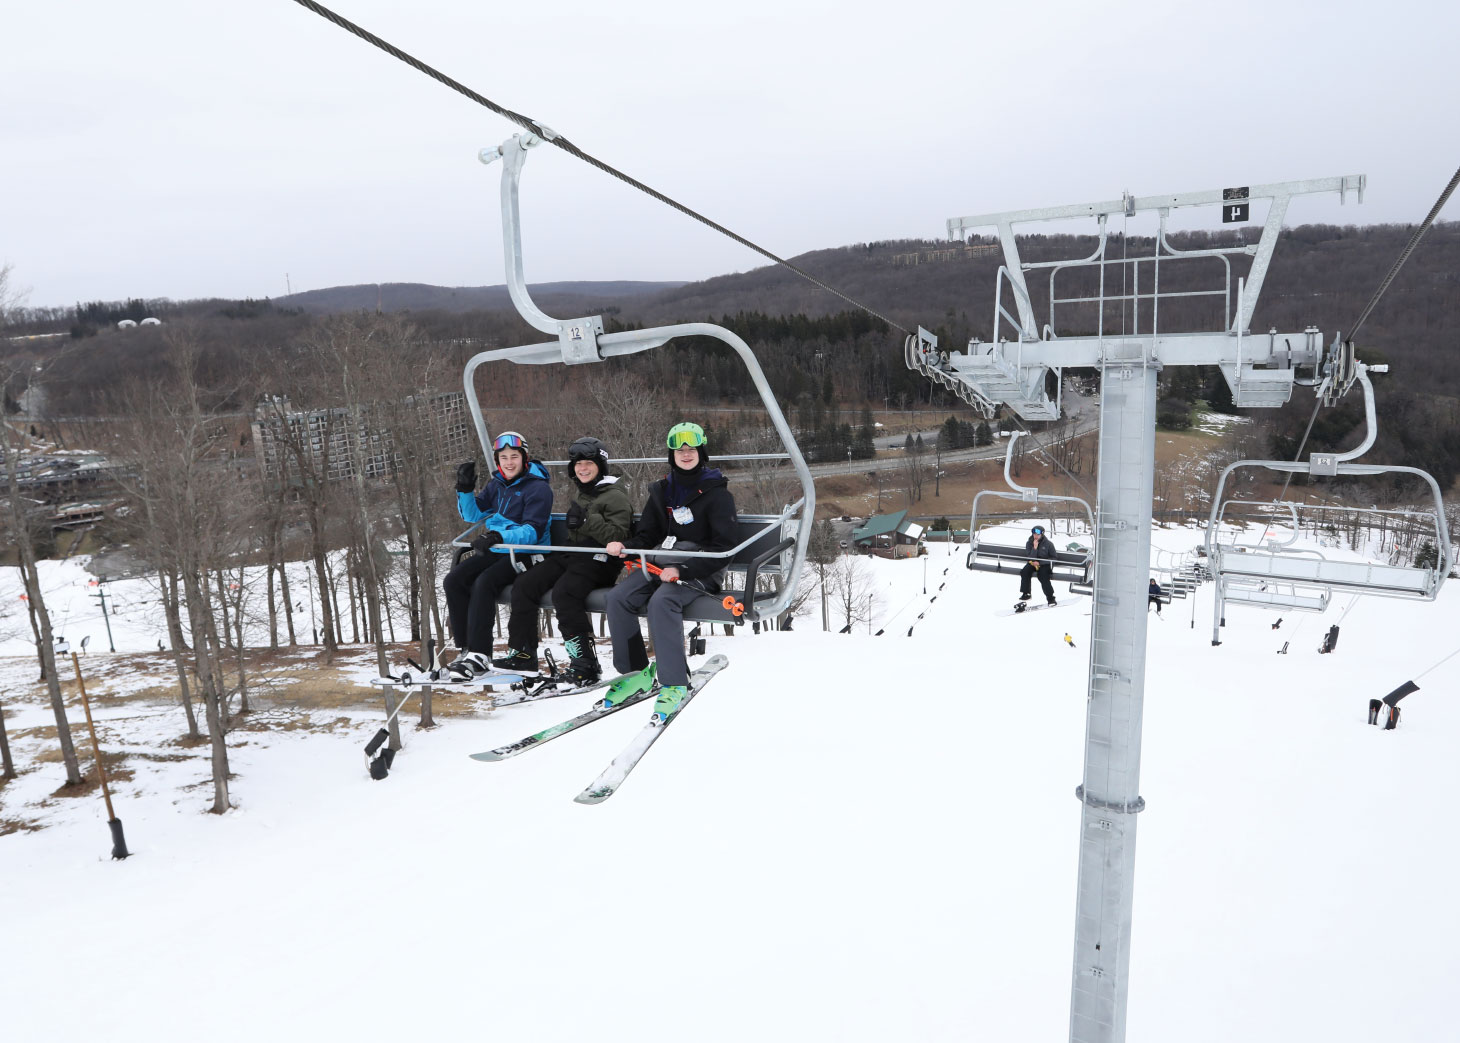 Three kids on ski lift